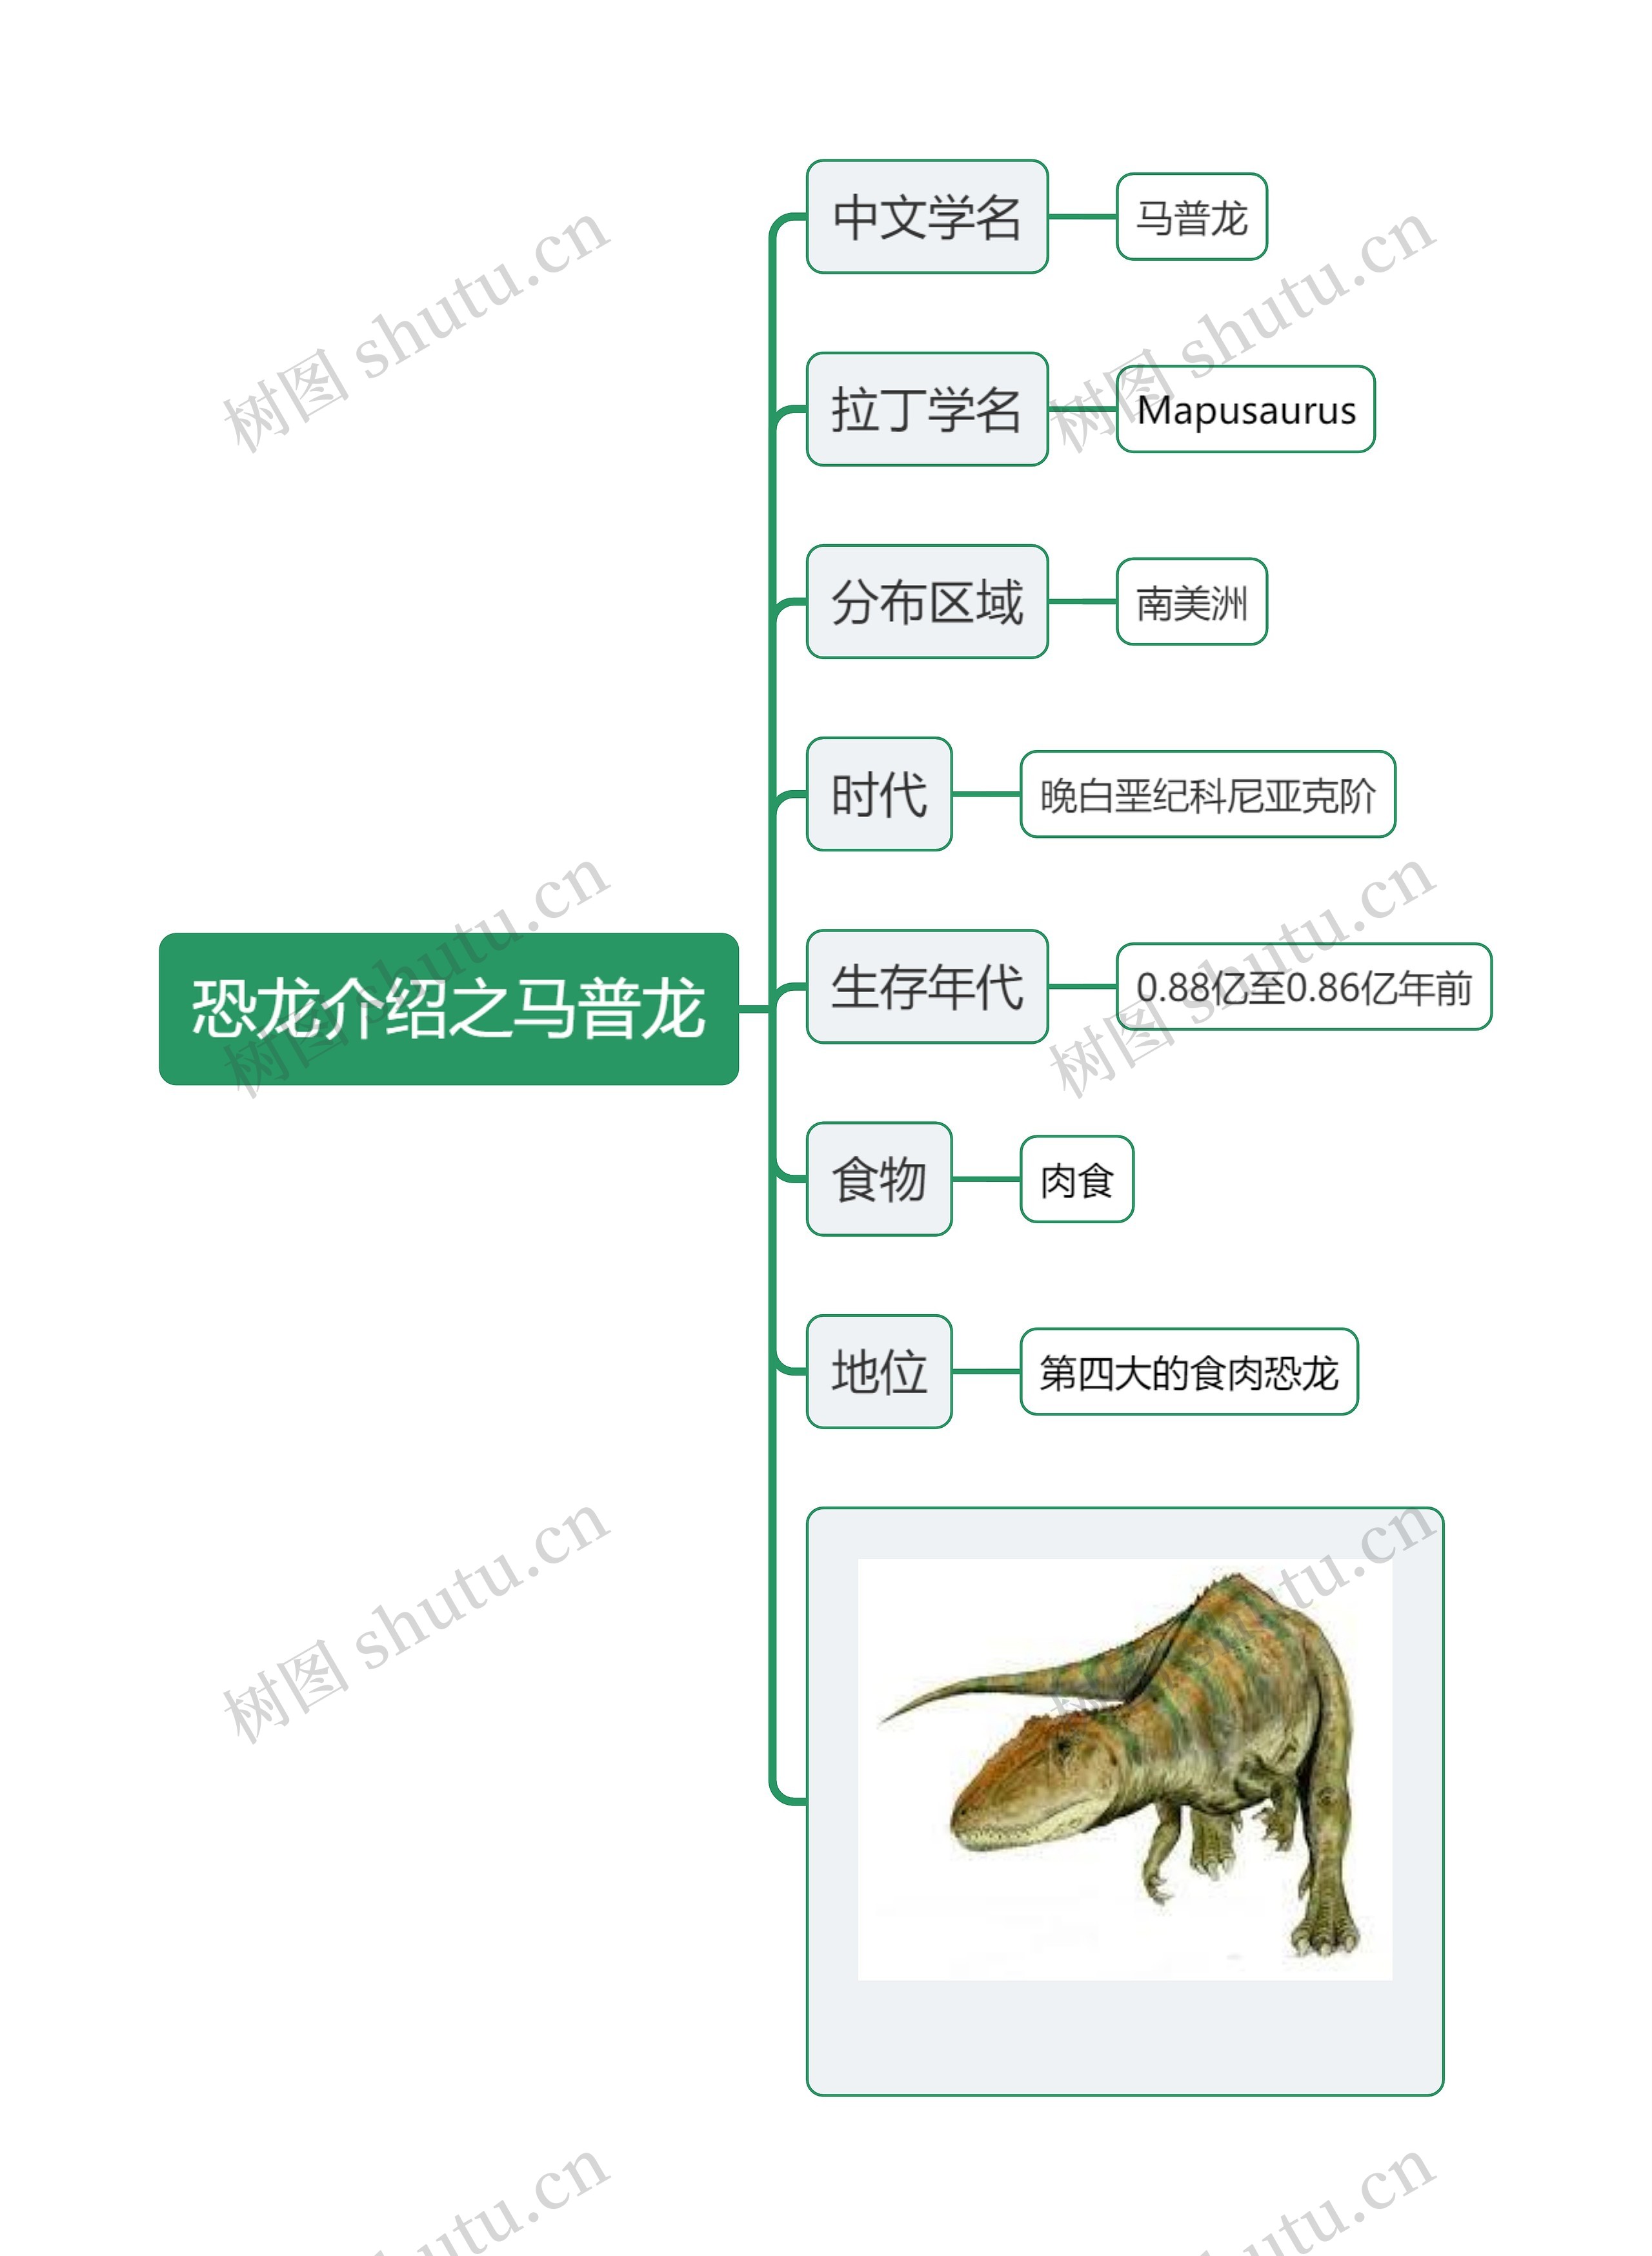 恐龙介绍之马普龙思维导图